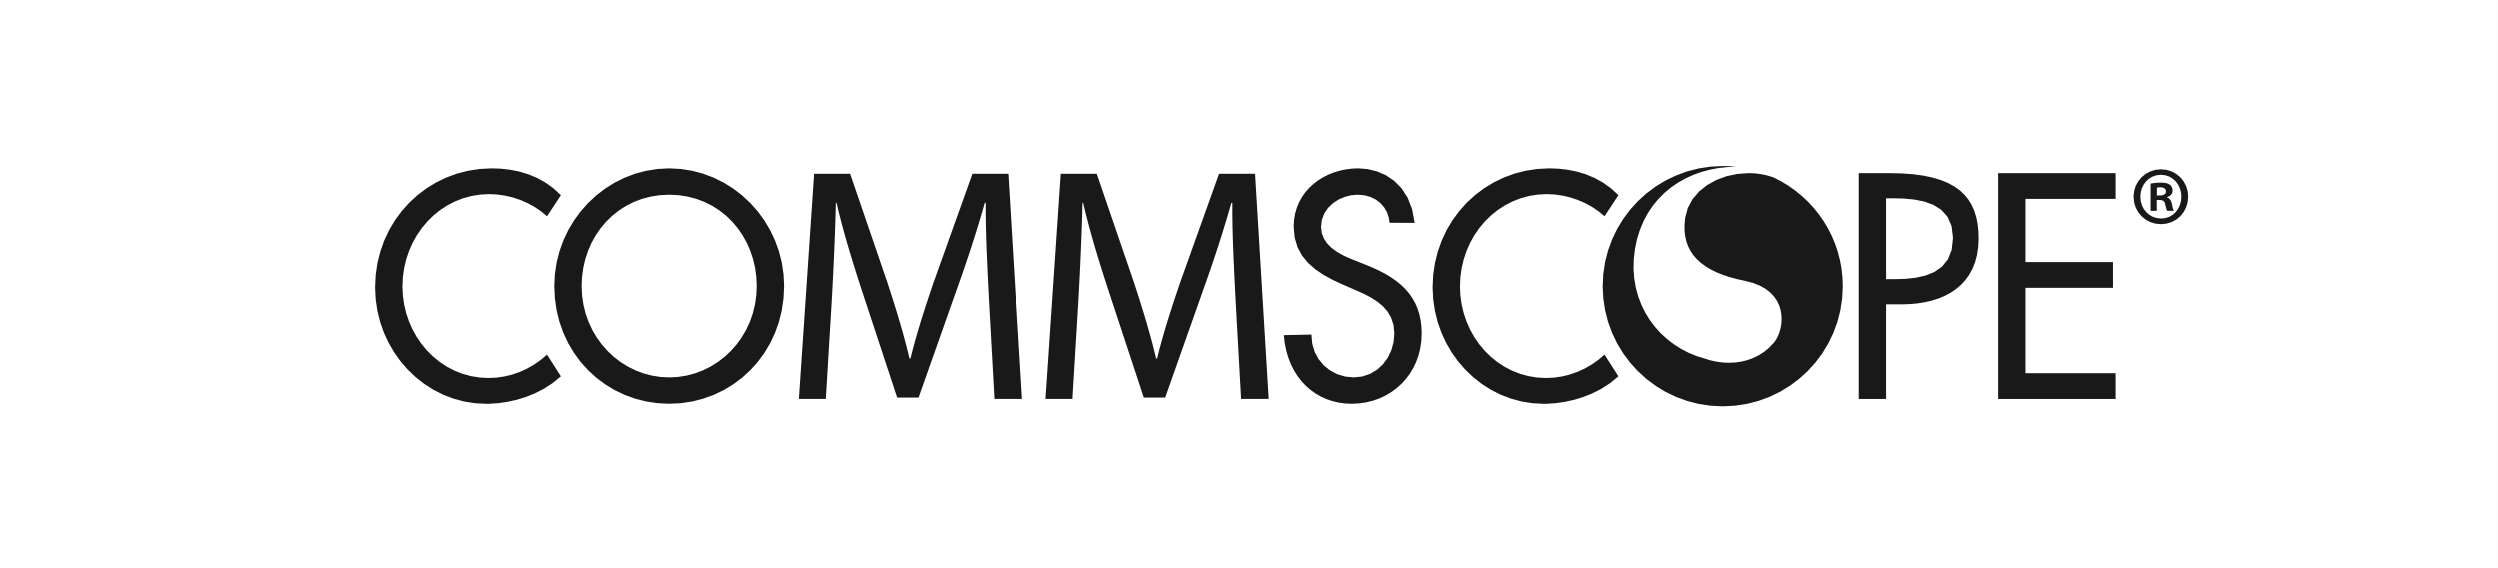 CommScope's logo